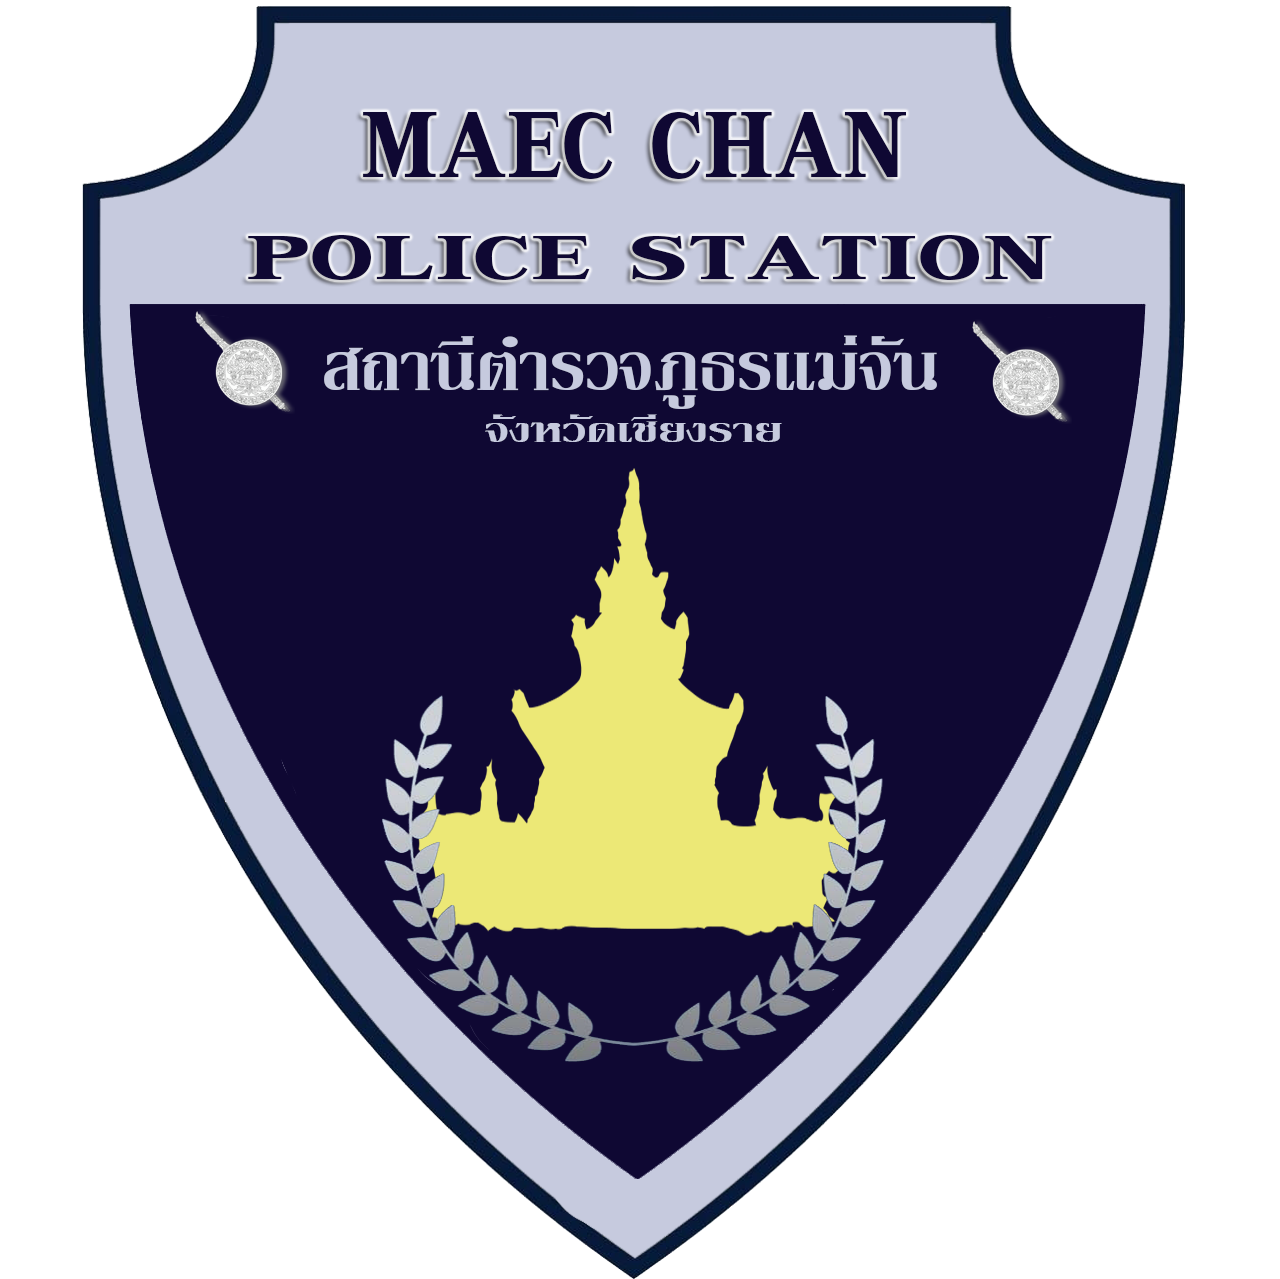 สถานีตำรวจภูธรแม่จัน จังหวัดเชียงราย logo